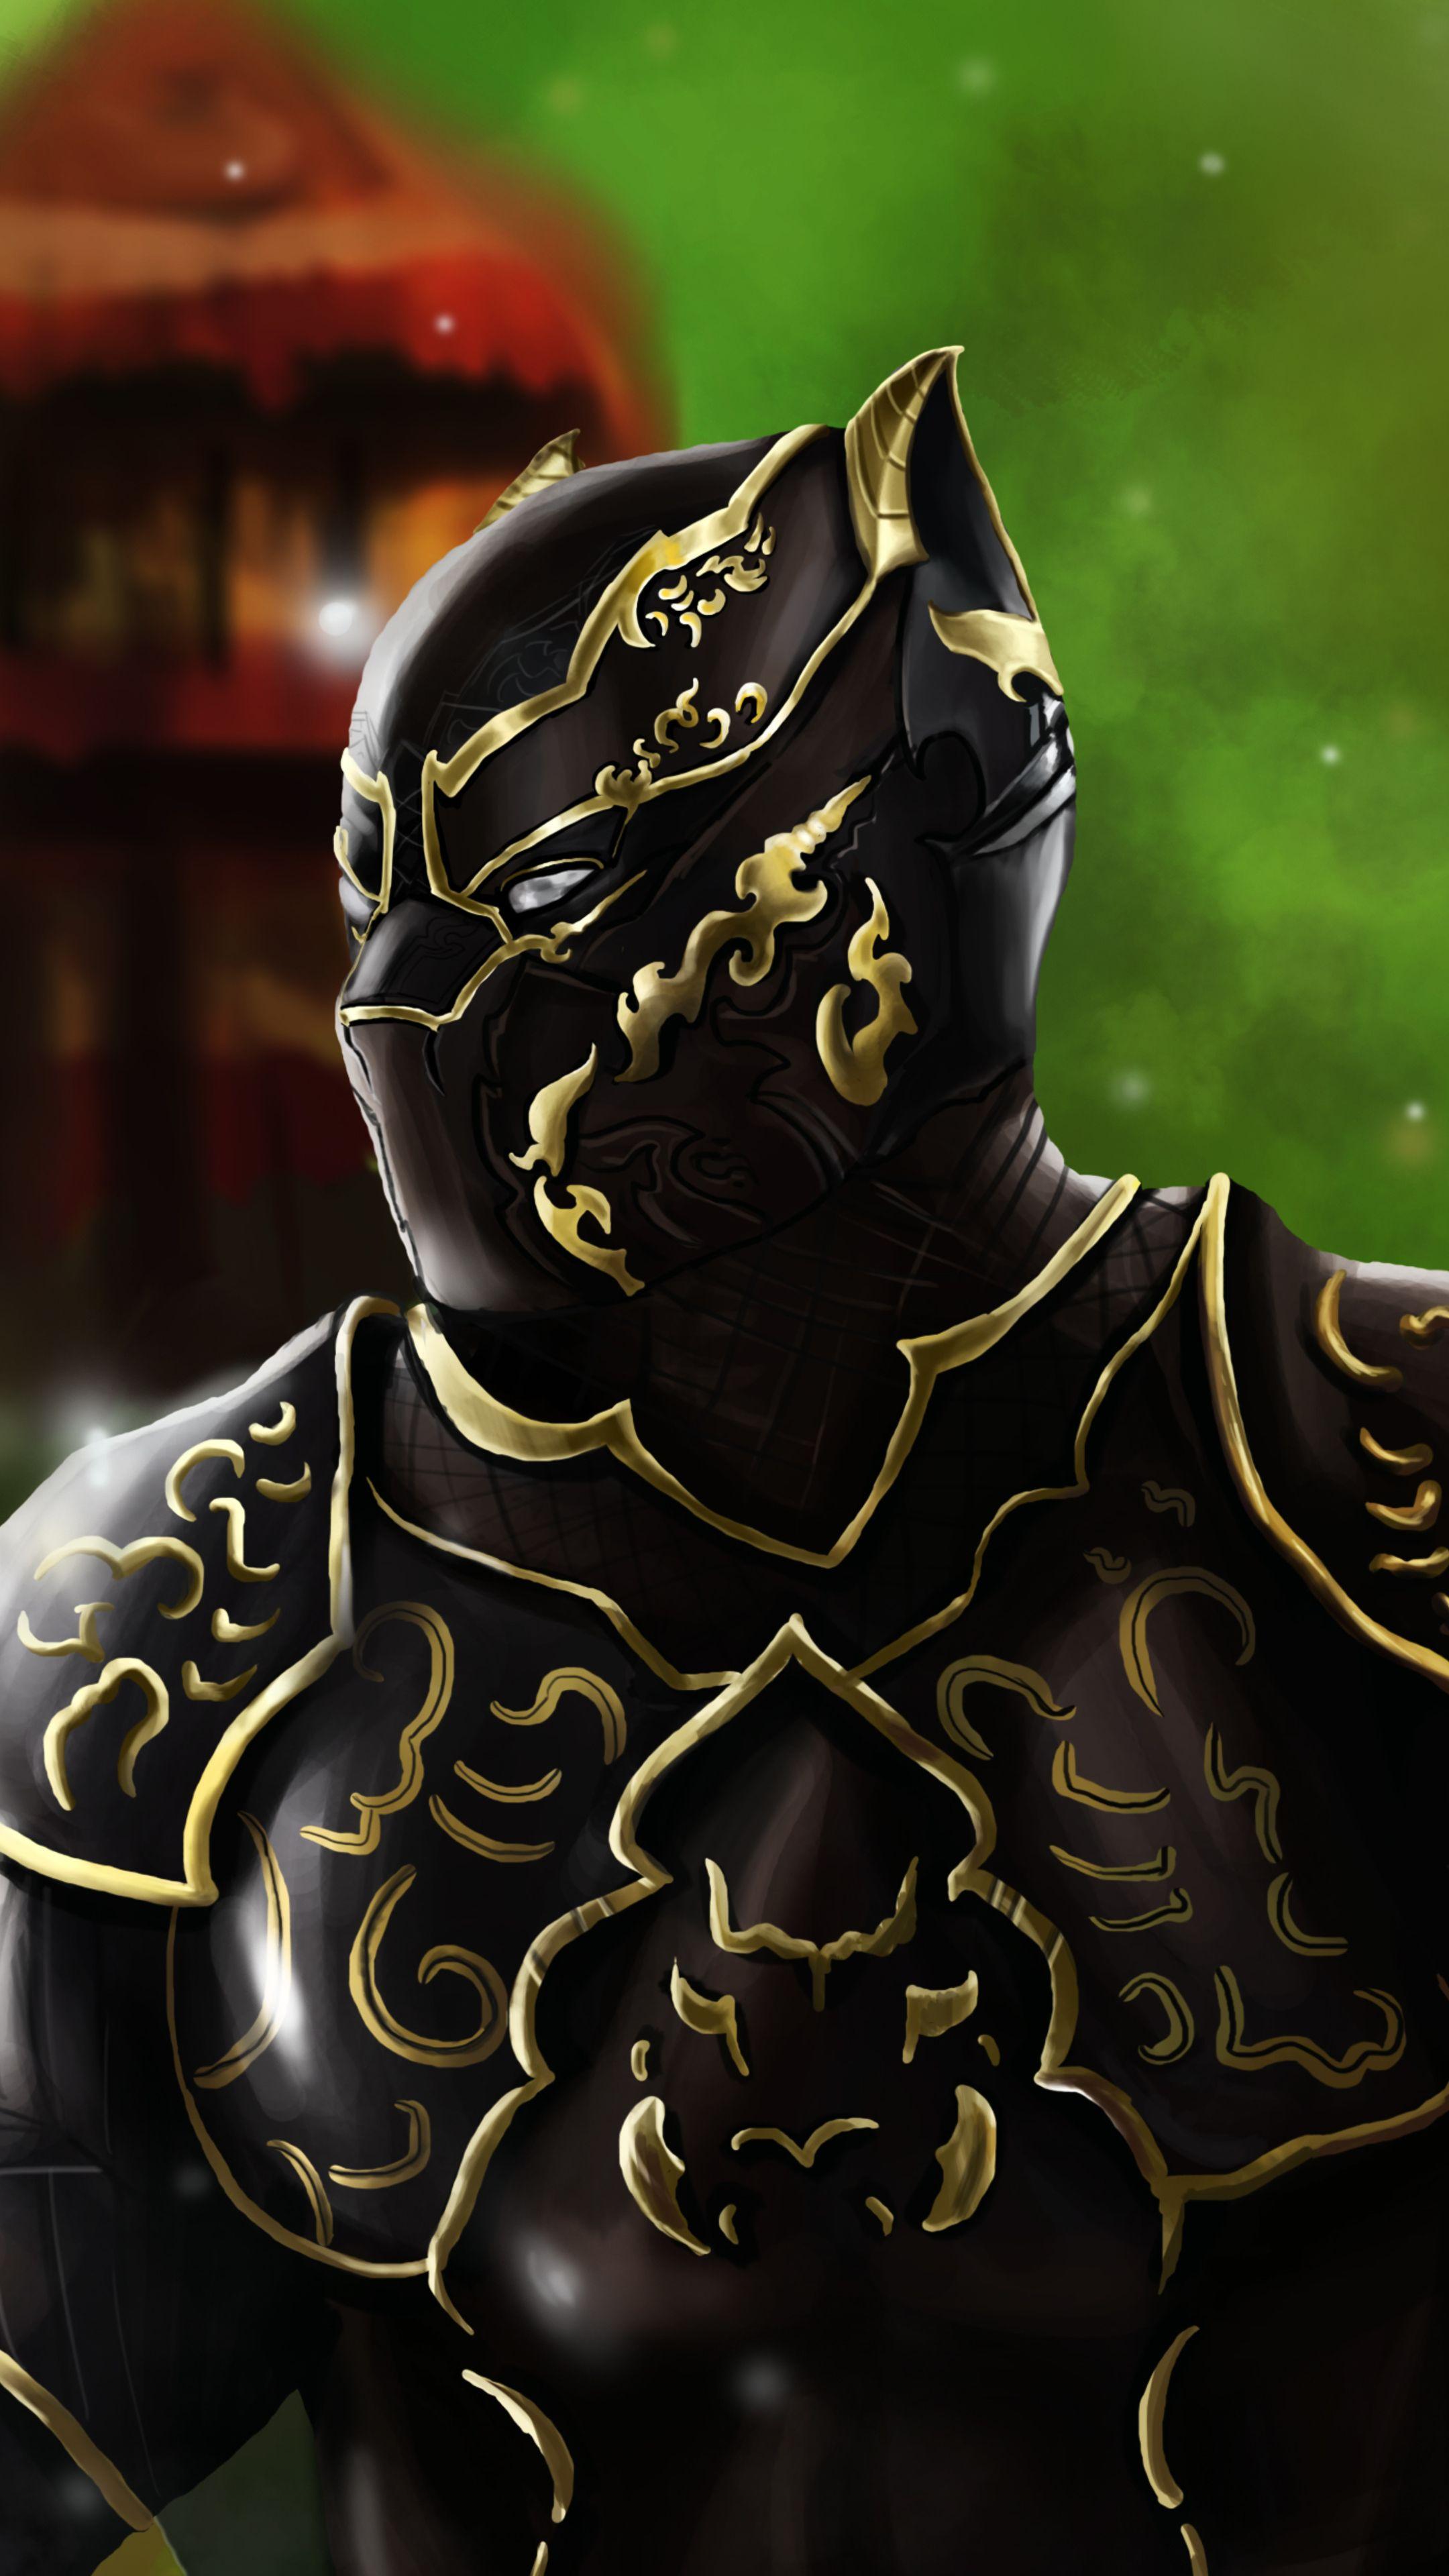 Black Panther Wakanda King Artwork Sony Xperia X, XZ, Z5